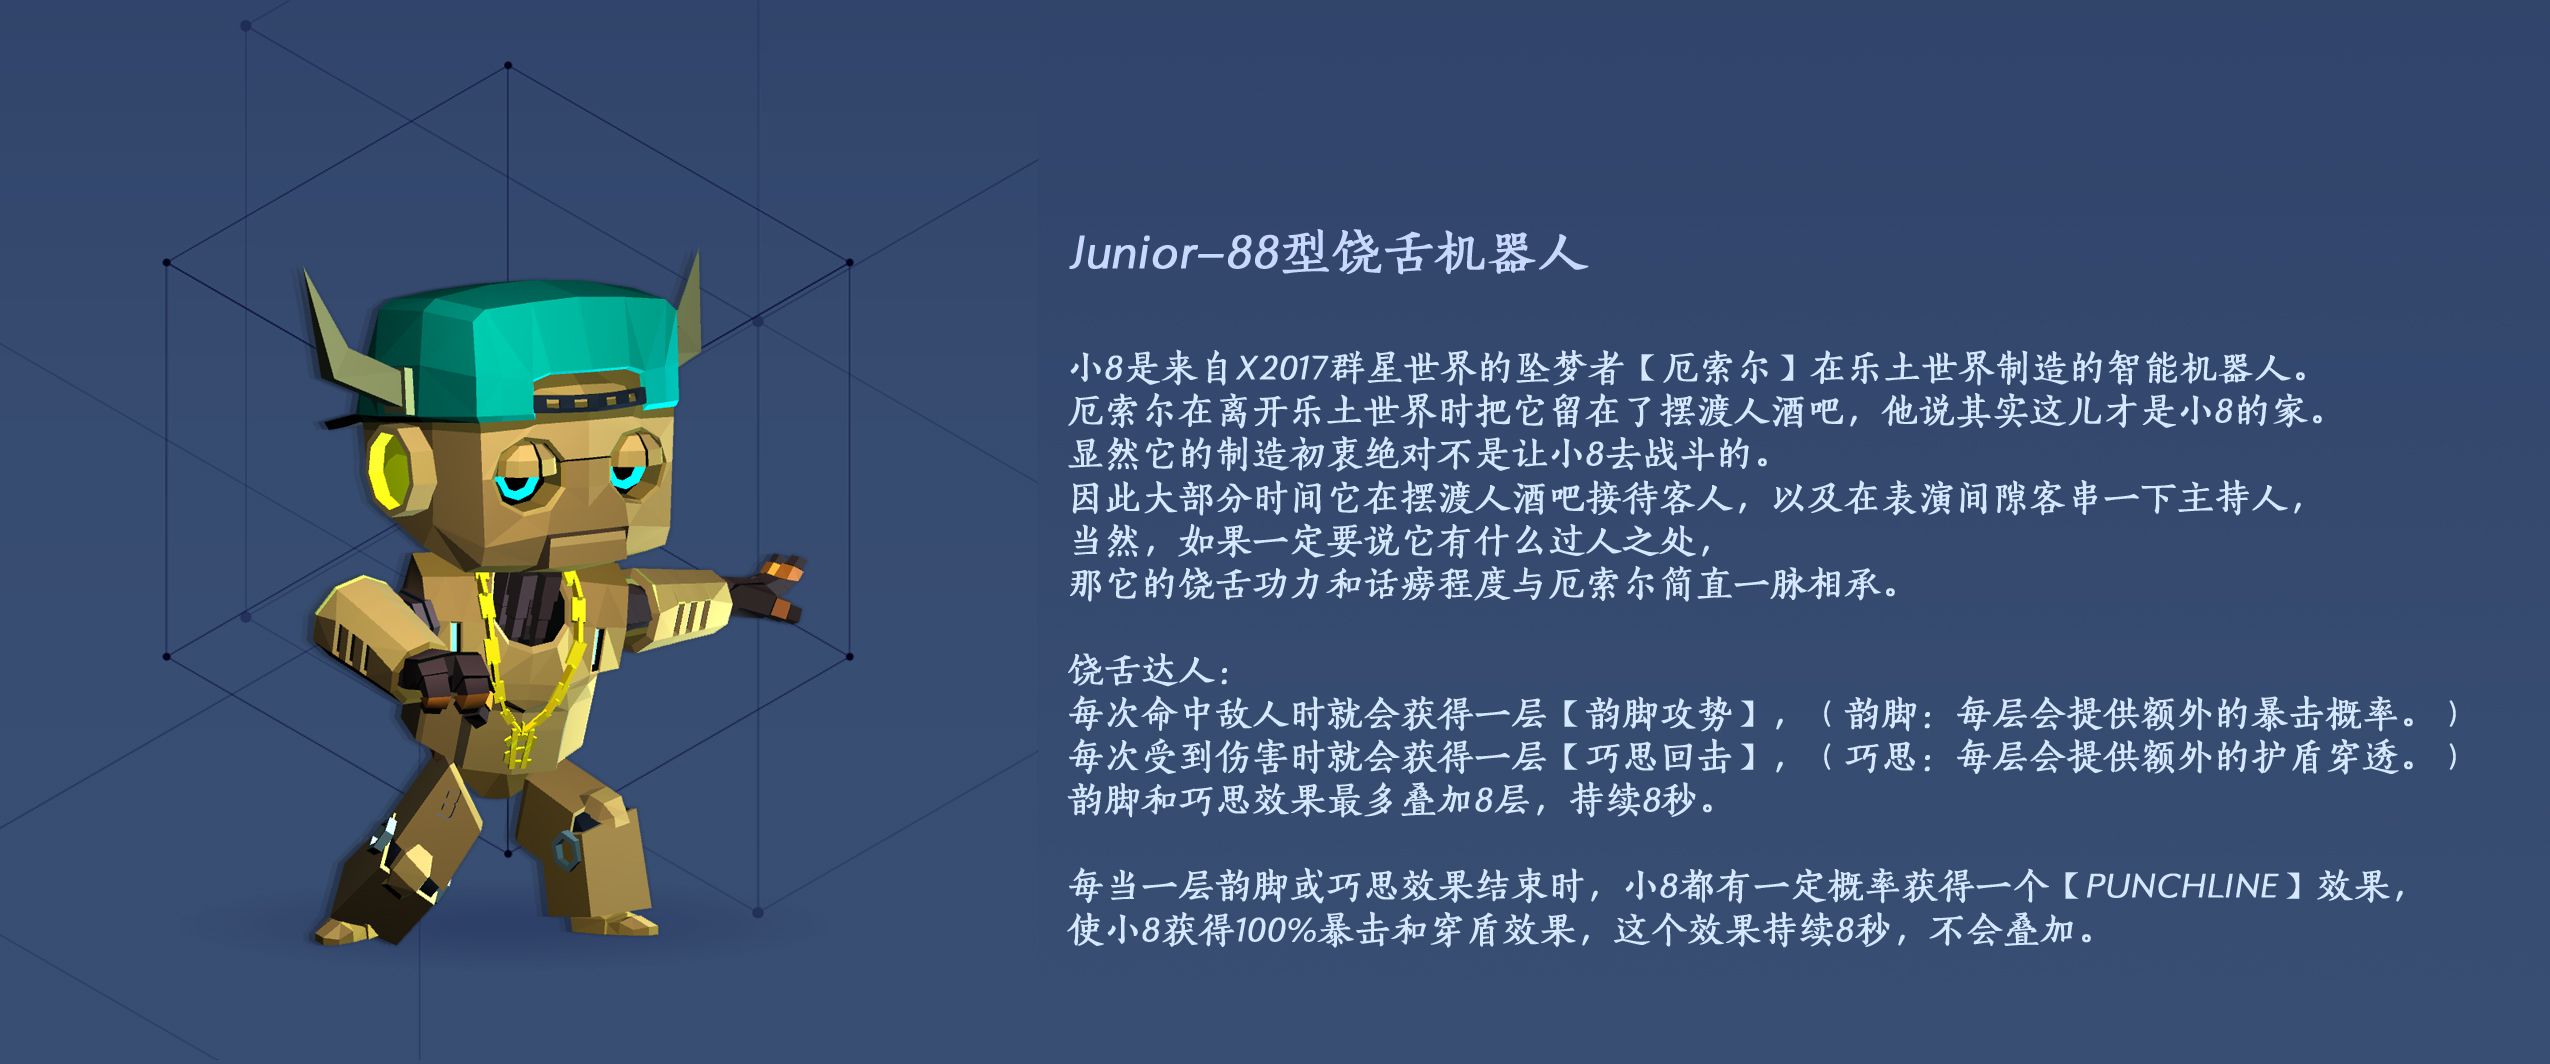 【梦境传奇】Junior-88型饶舌机器人